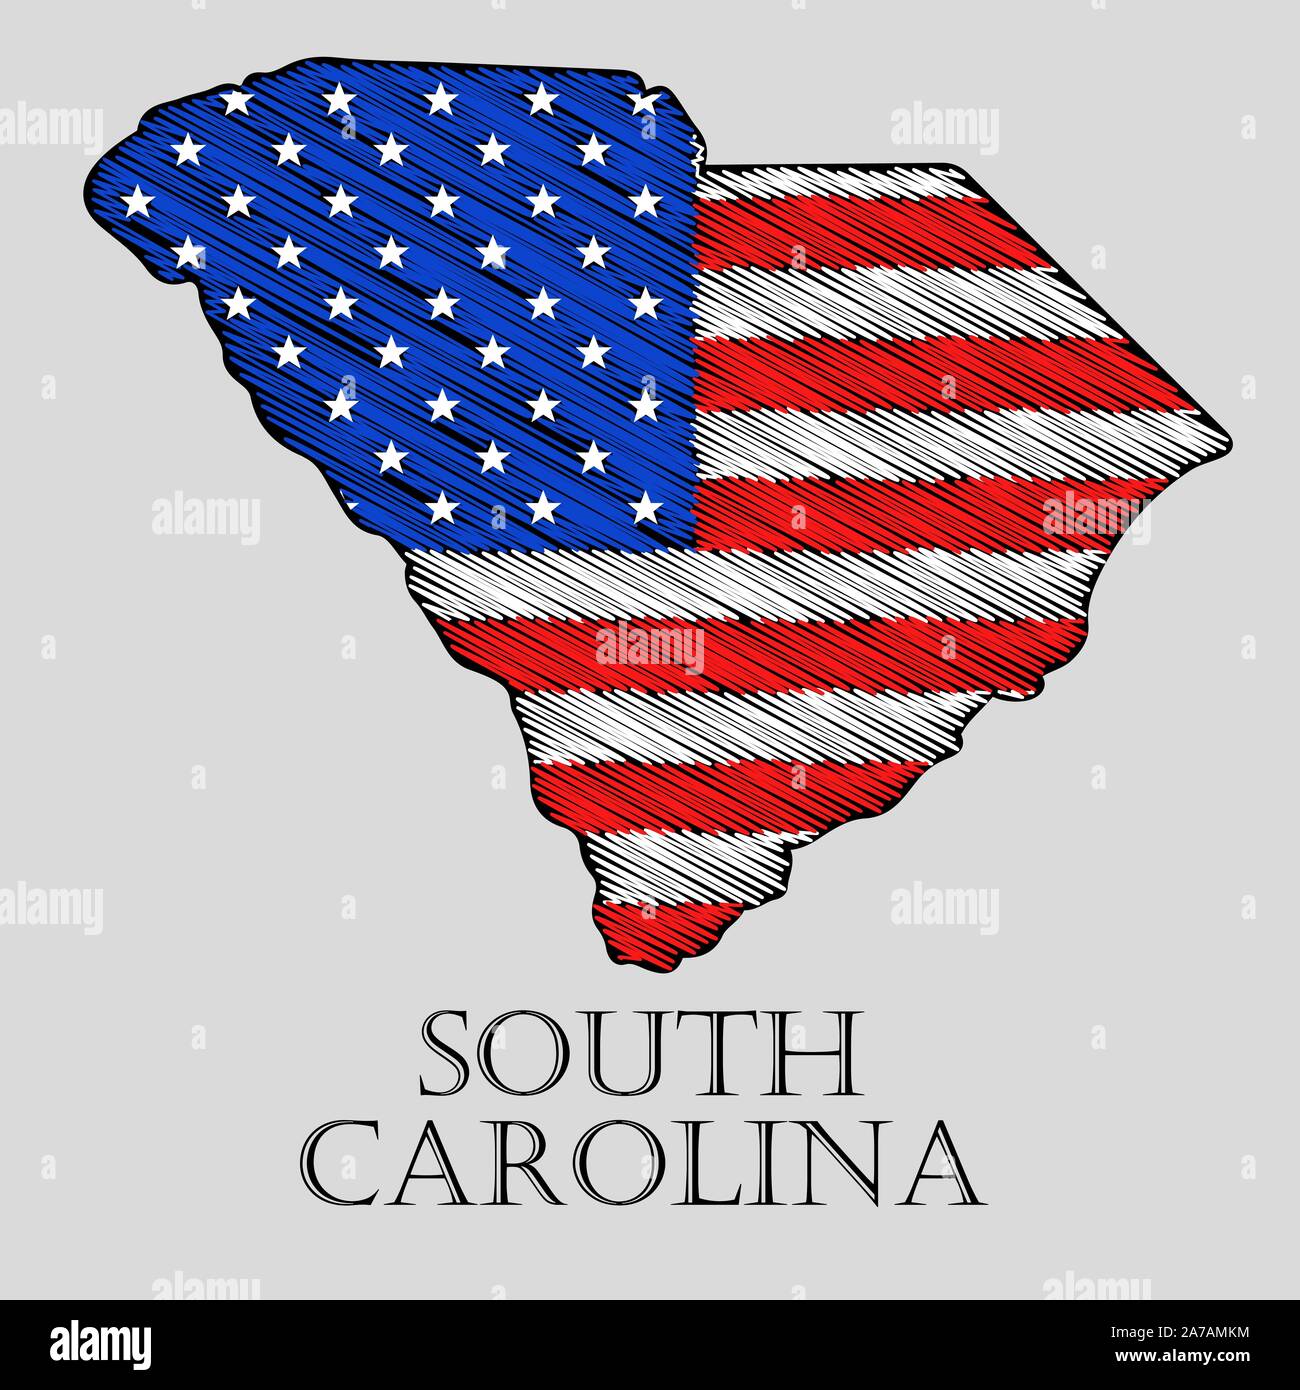 Staat South Carolina im Scribble stil-Vector Illustration. Abstrakte flache Karte von South Carolina mit der Einführung der US-Flagge. Stock Vektor